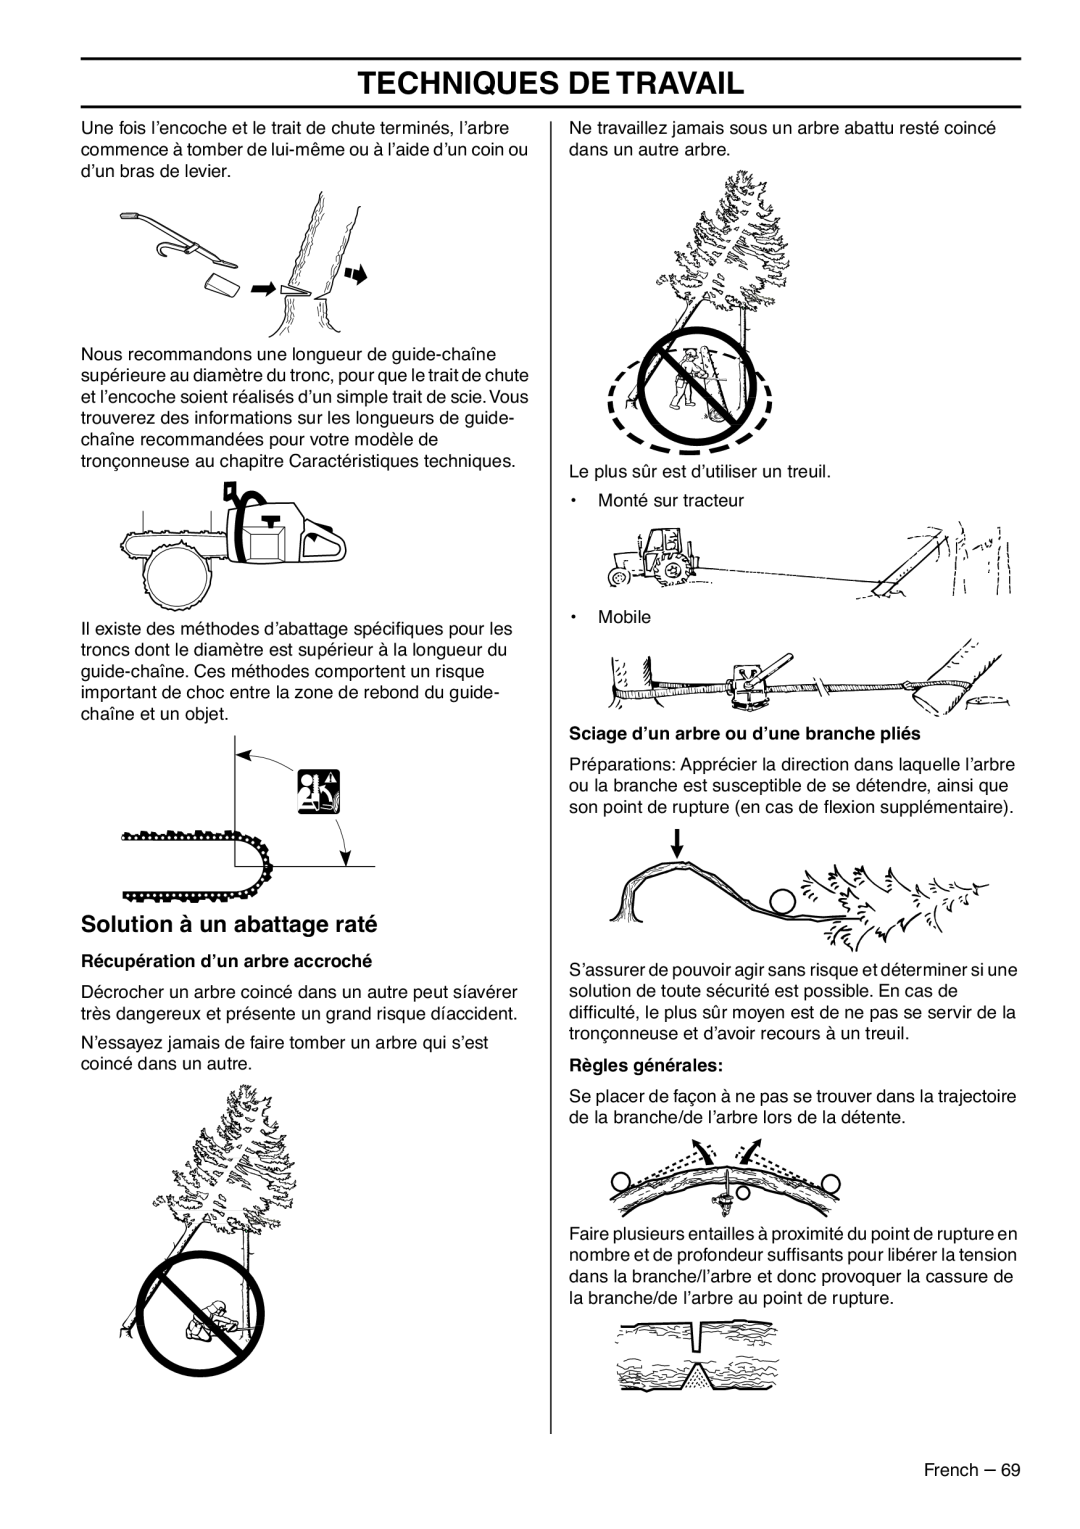 RedMax G5300 manual Solution à un abattage raté, Techniques De Travail, Récupération d’un arbre accroché, Règles générales 